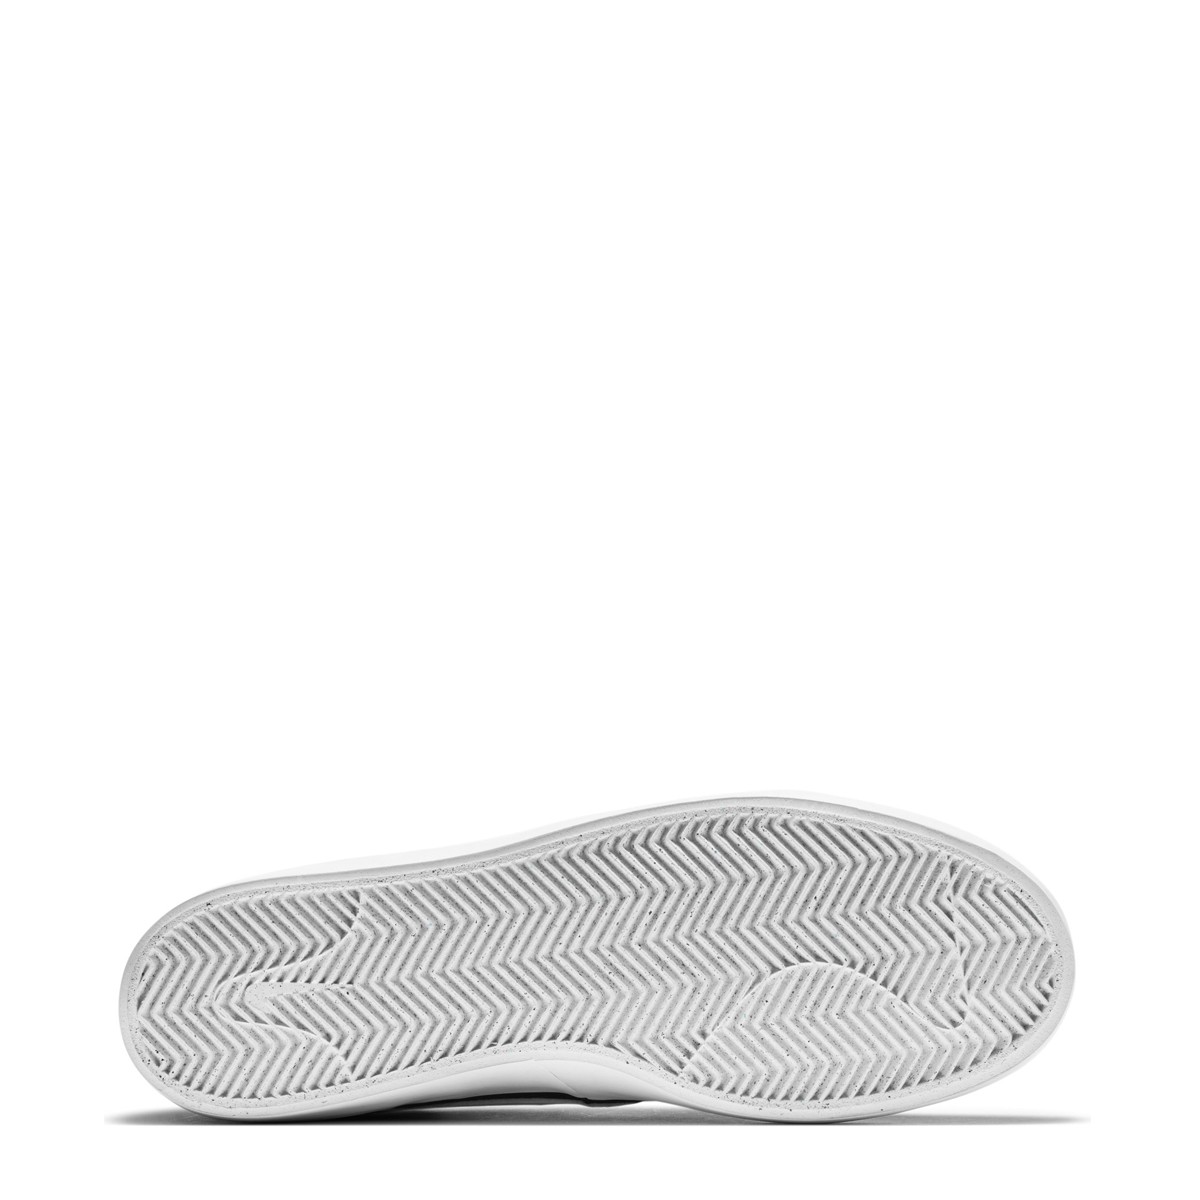 Nike SB Heritage Vulc Erkek Ayakkabısı CD5010-003